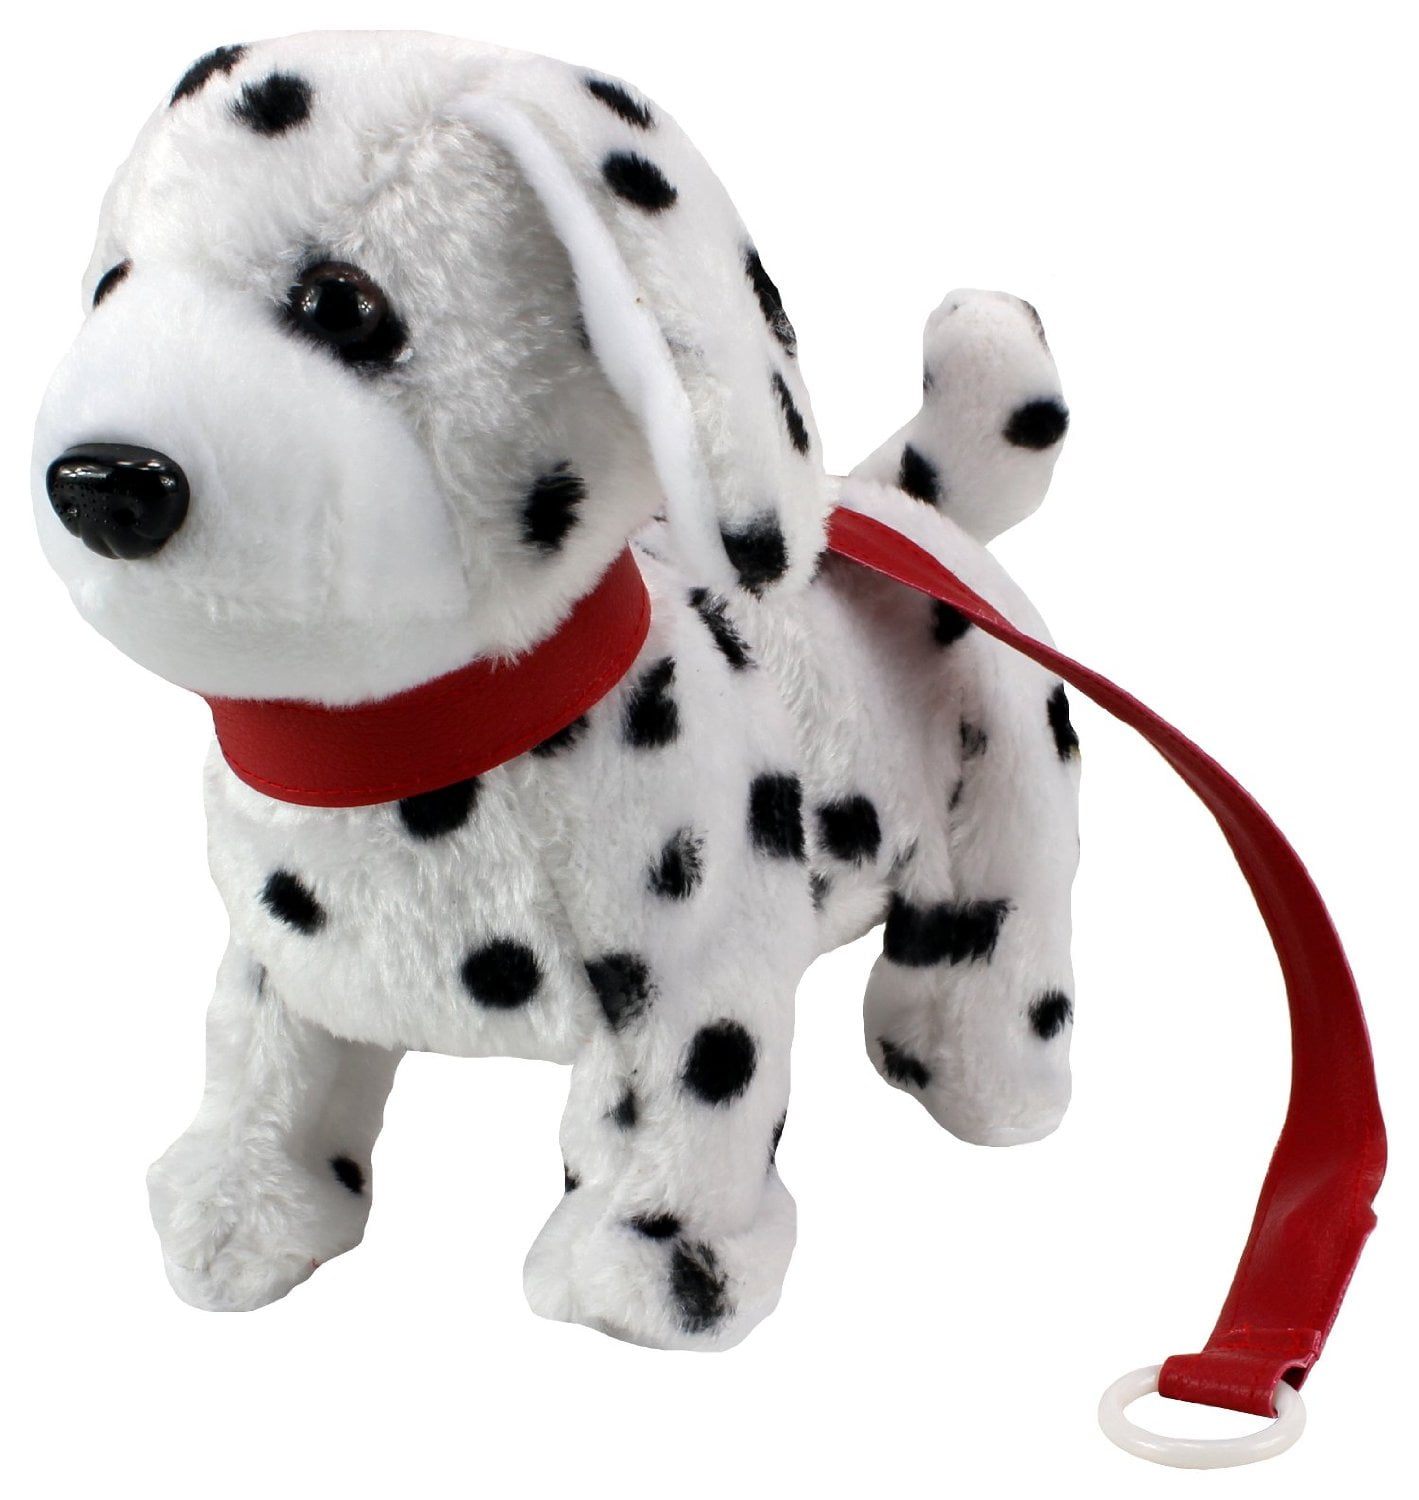 Battery Operated Dalmatian Dog Plush Stuffed Animal Walking Kids Toy Xmas Gift 